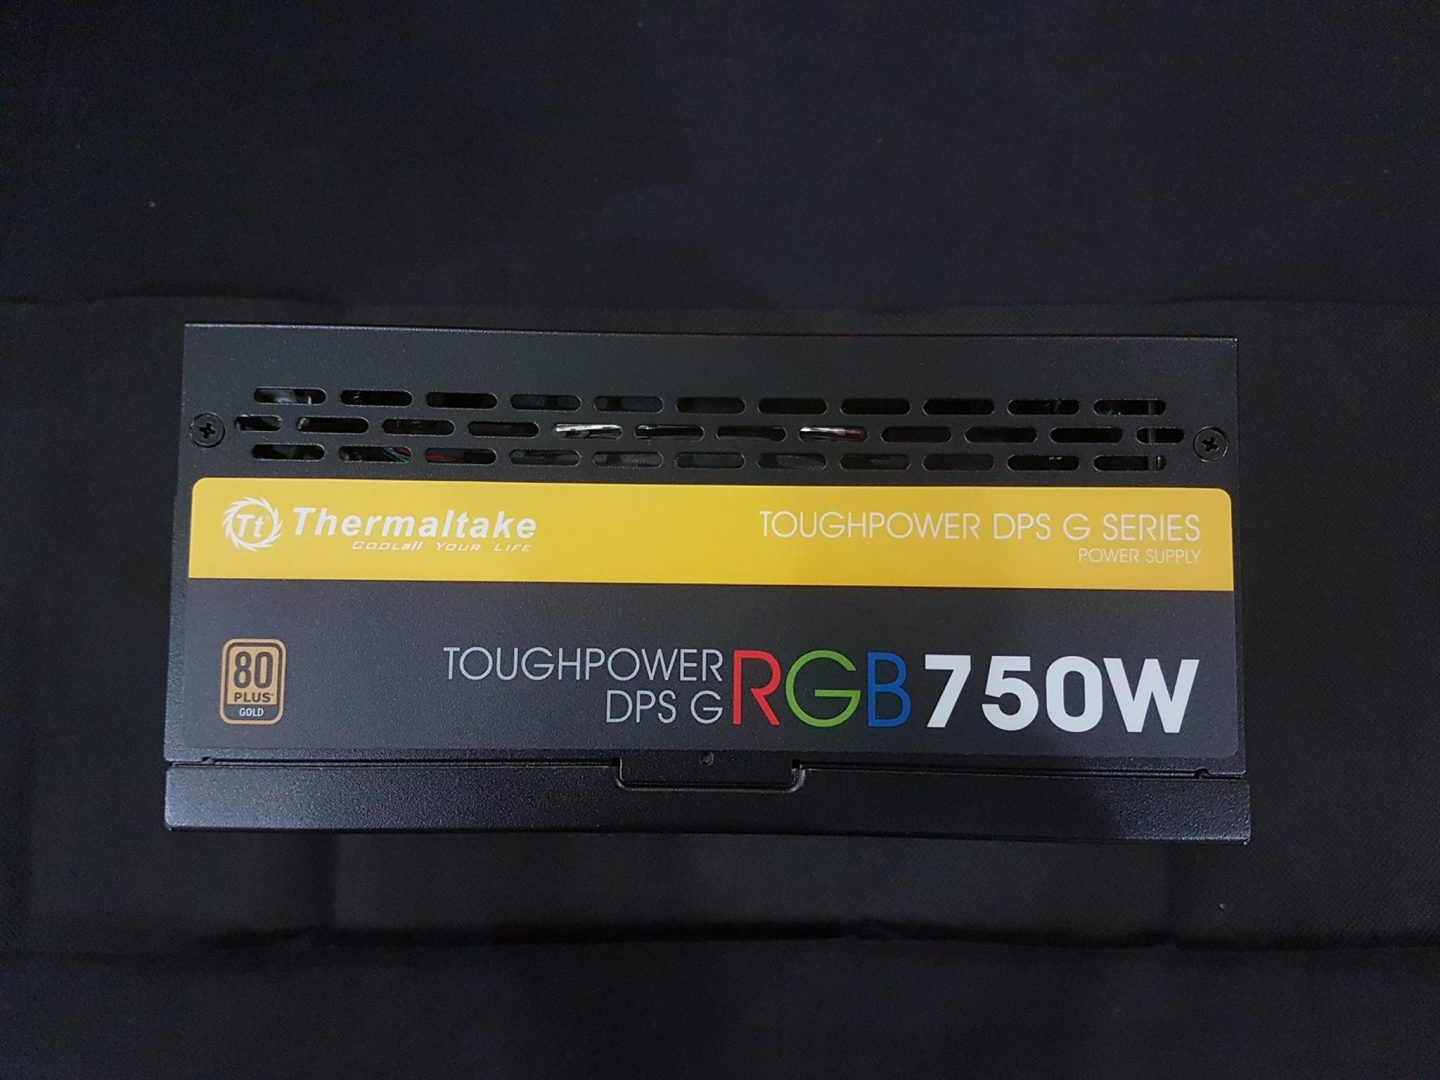 Thermaltake Toughpower DPS G RGB 750W PSU Review